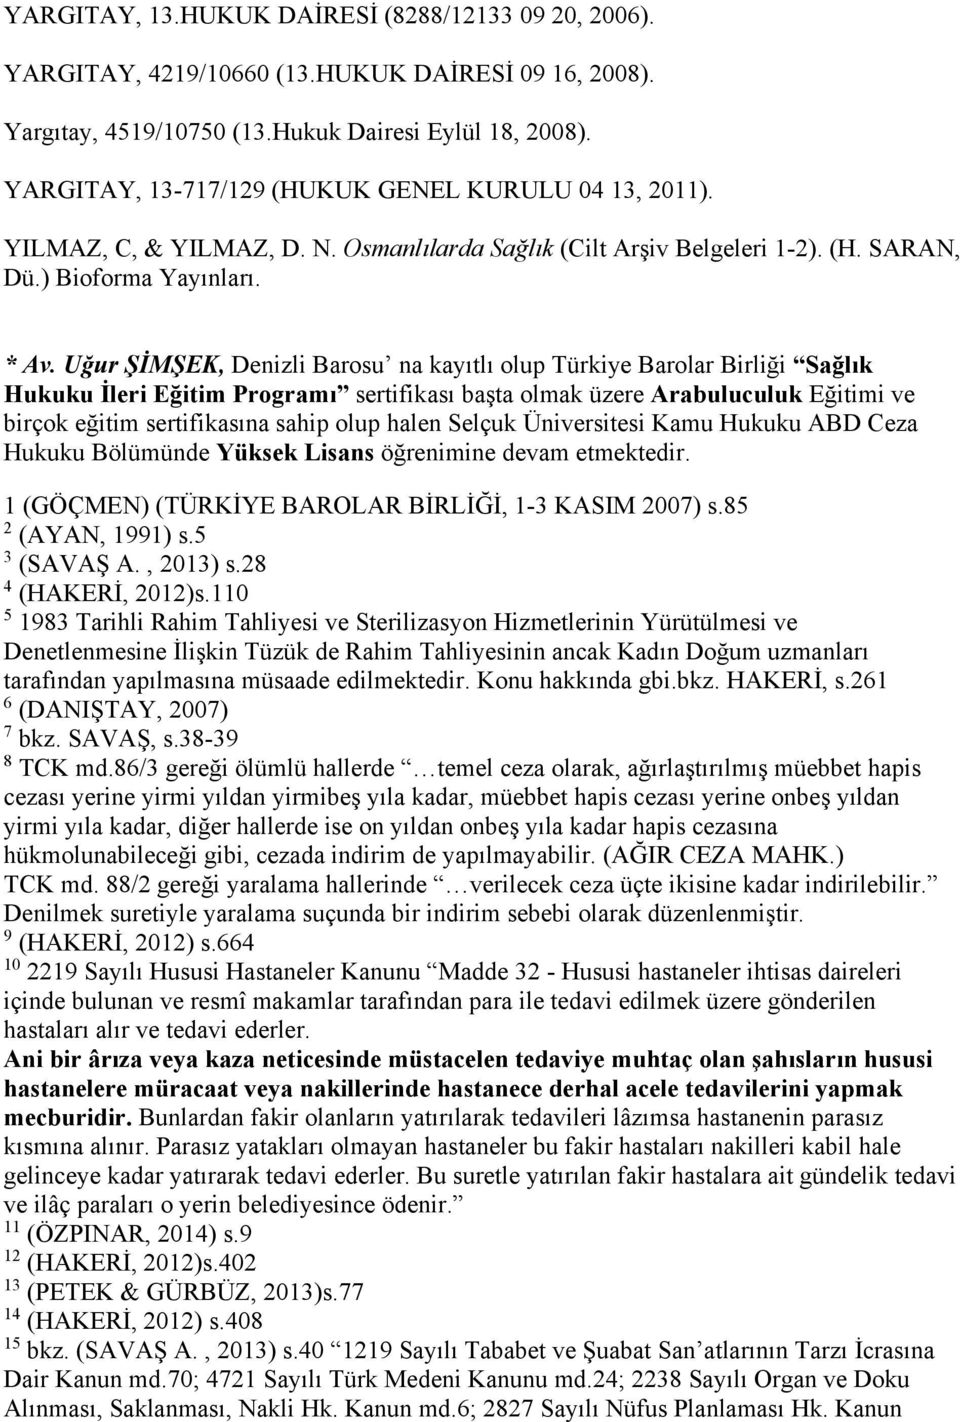 Uğur ŞİMŞEK, Denizli Barosu na kayıtlı olup Türkiye Barolar Birliği Sağlık Hukuku İleri Eğitim Programı sertifikası başta olmak üzere Arabuluculuk Eğitimi ve birçok eğitim sertifikasına sahip olup